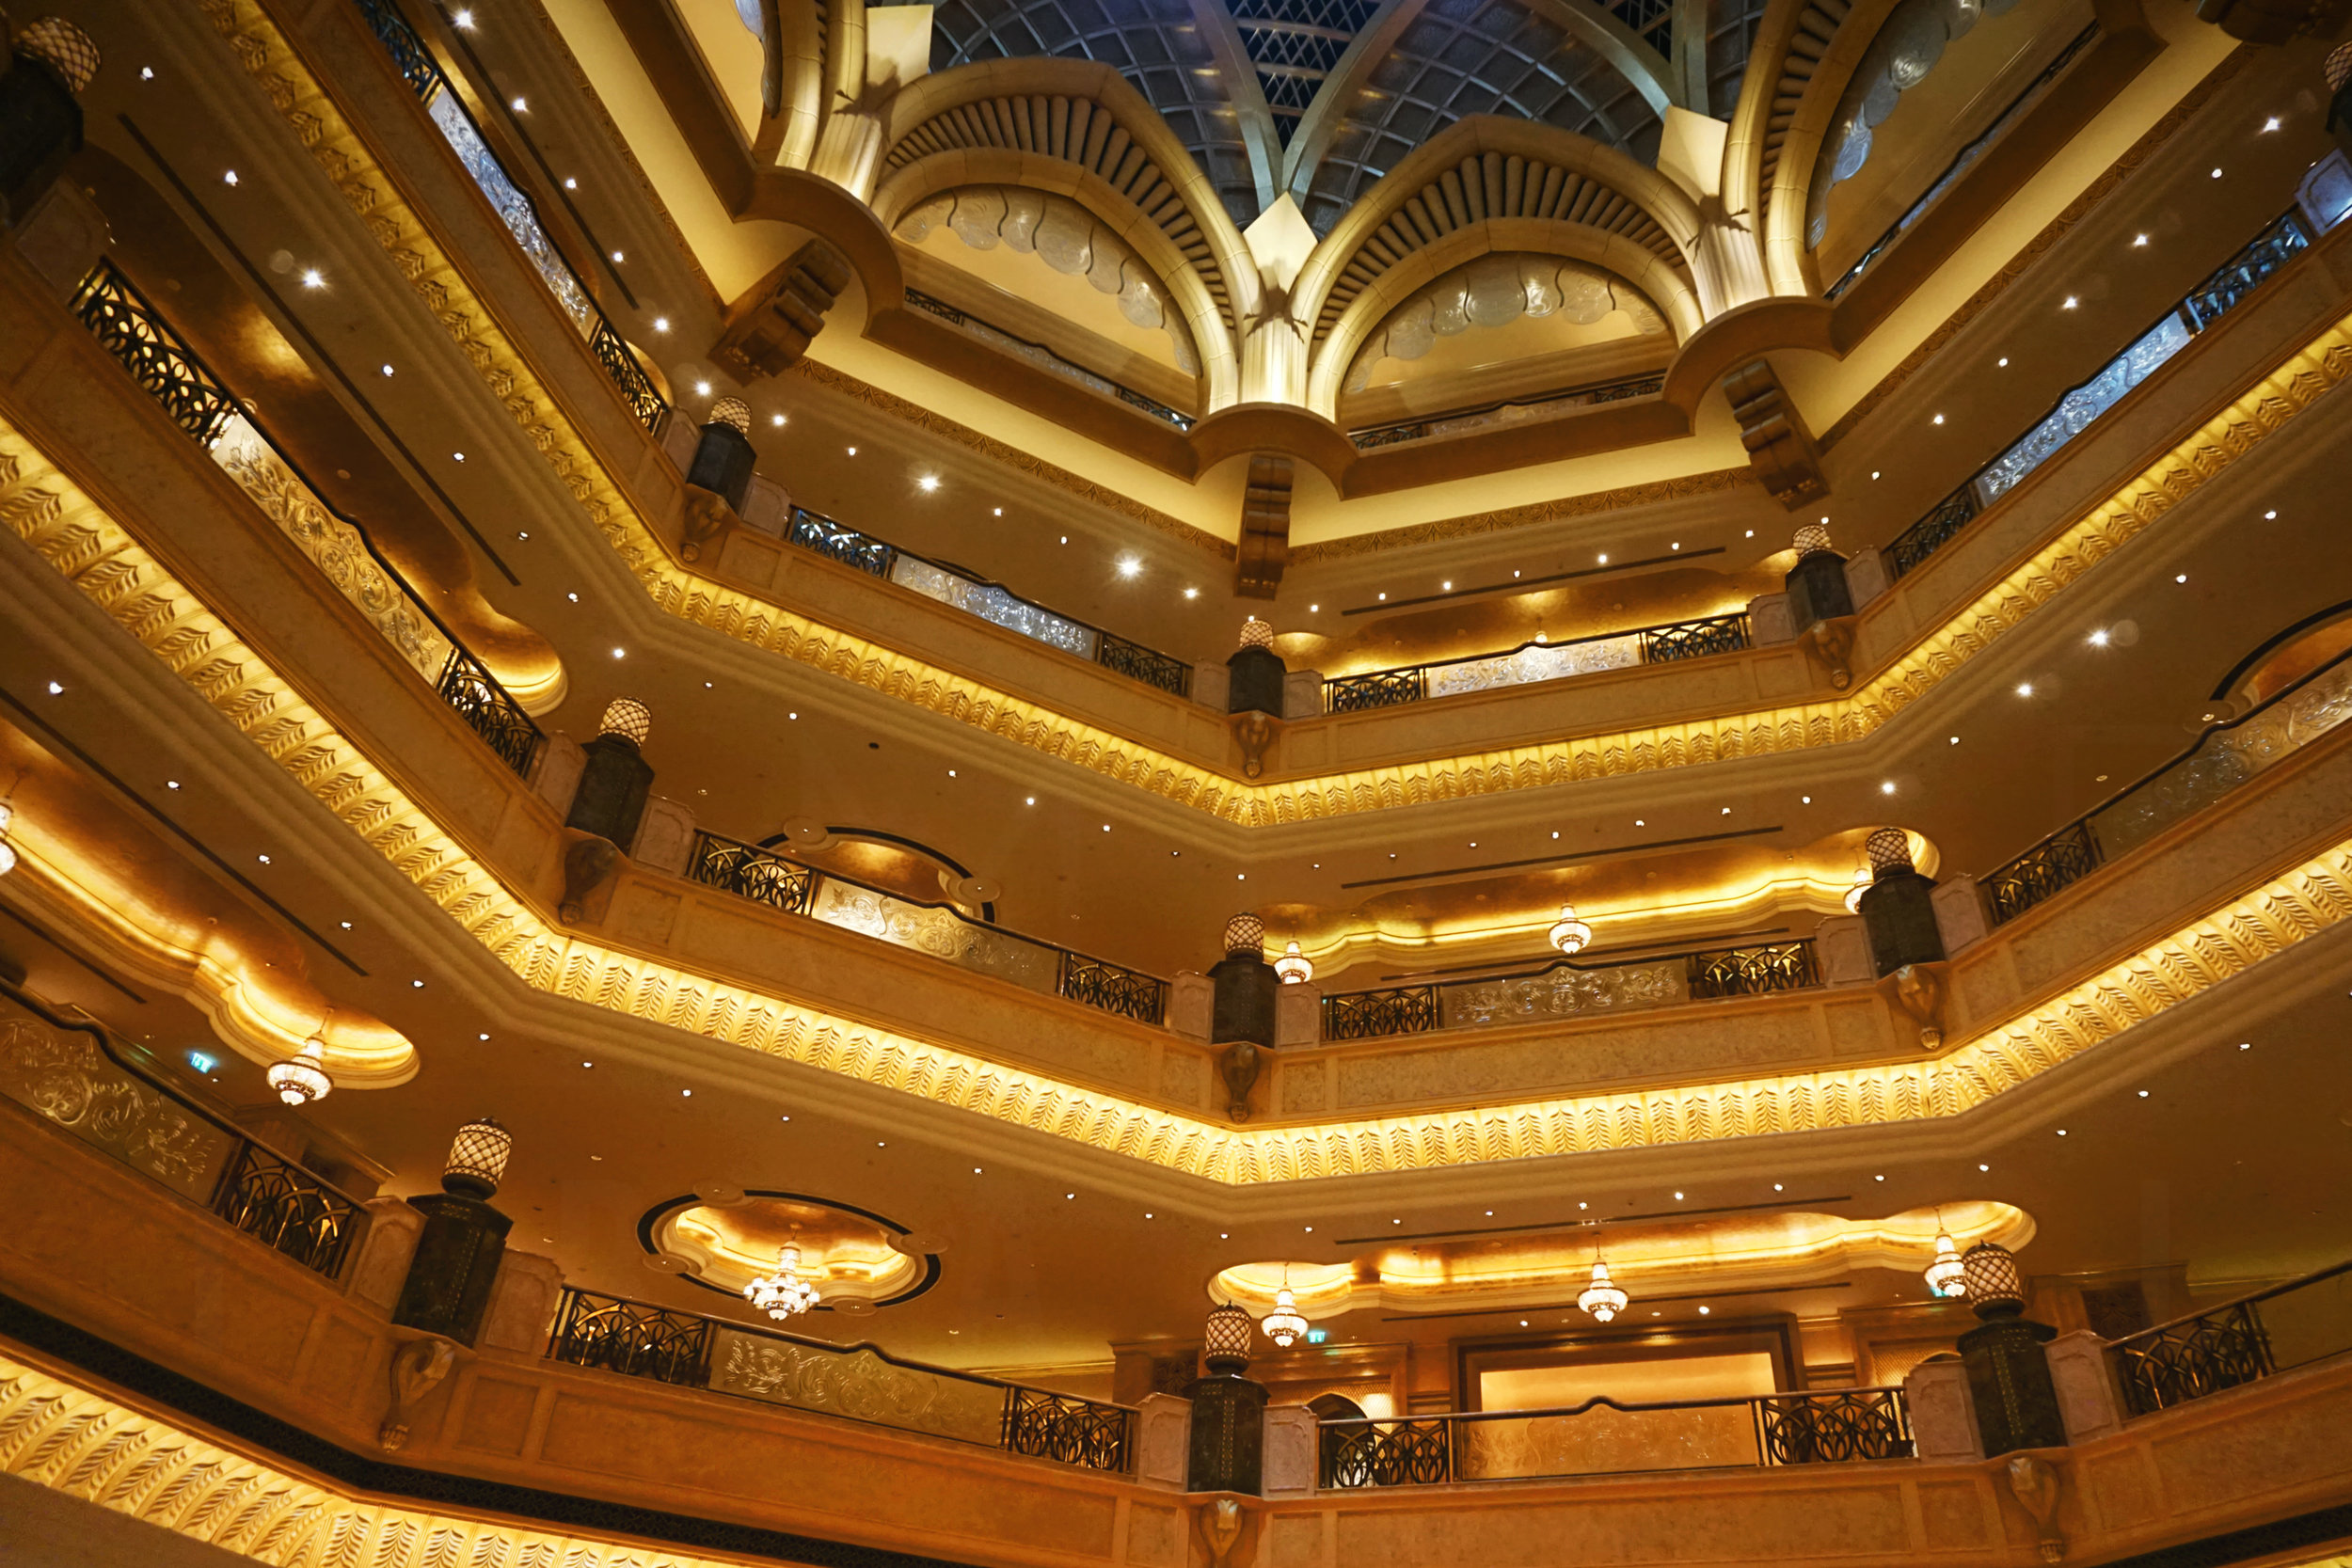 UAE_Abu Dhabi_travel_Emirates Palace hotel.jpg